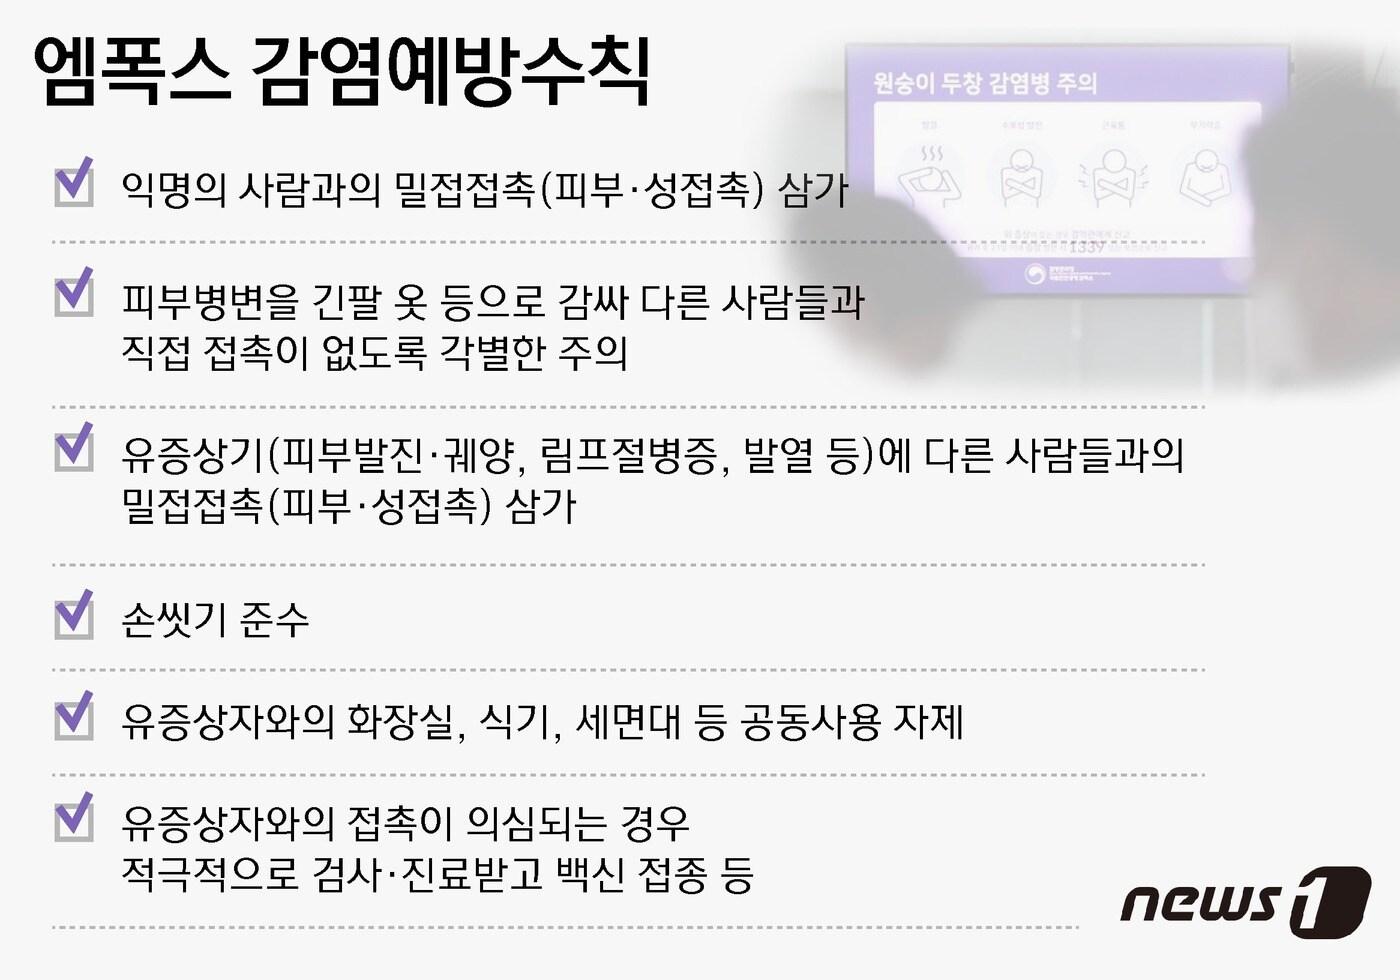 엠폭스 감염예방수칙 ⓒ News1 김지영 디자이너